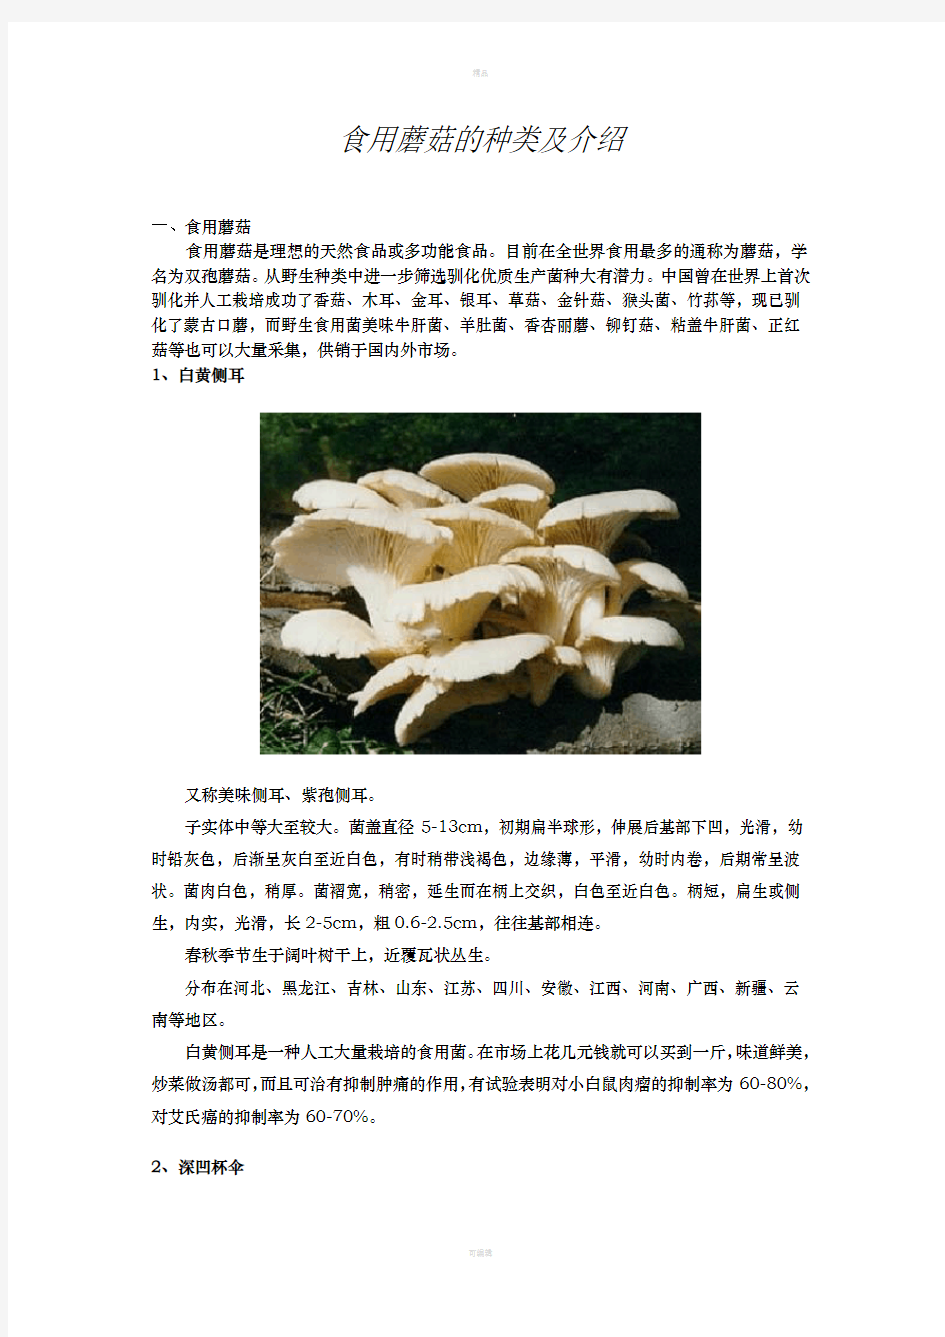 食用蘑菇的种类介绍